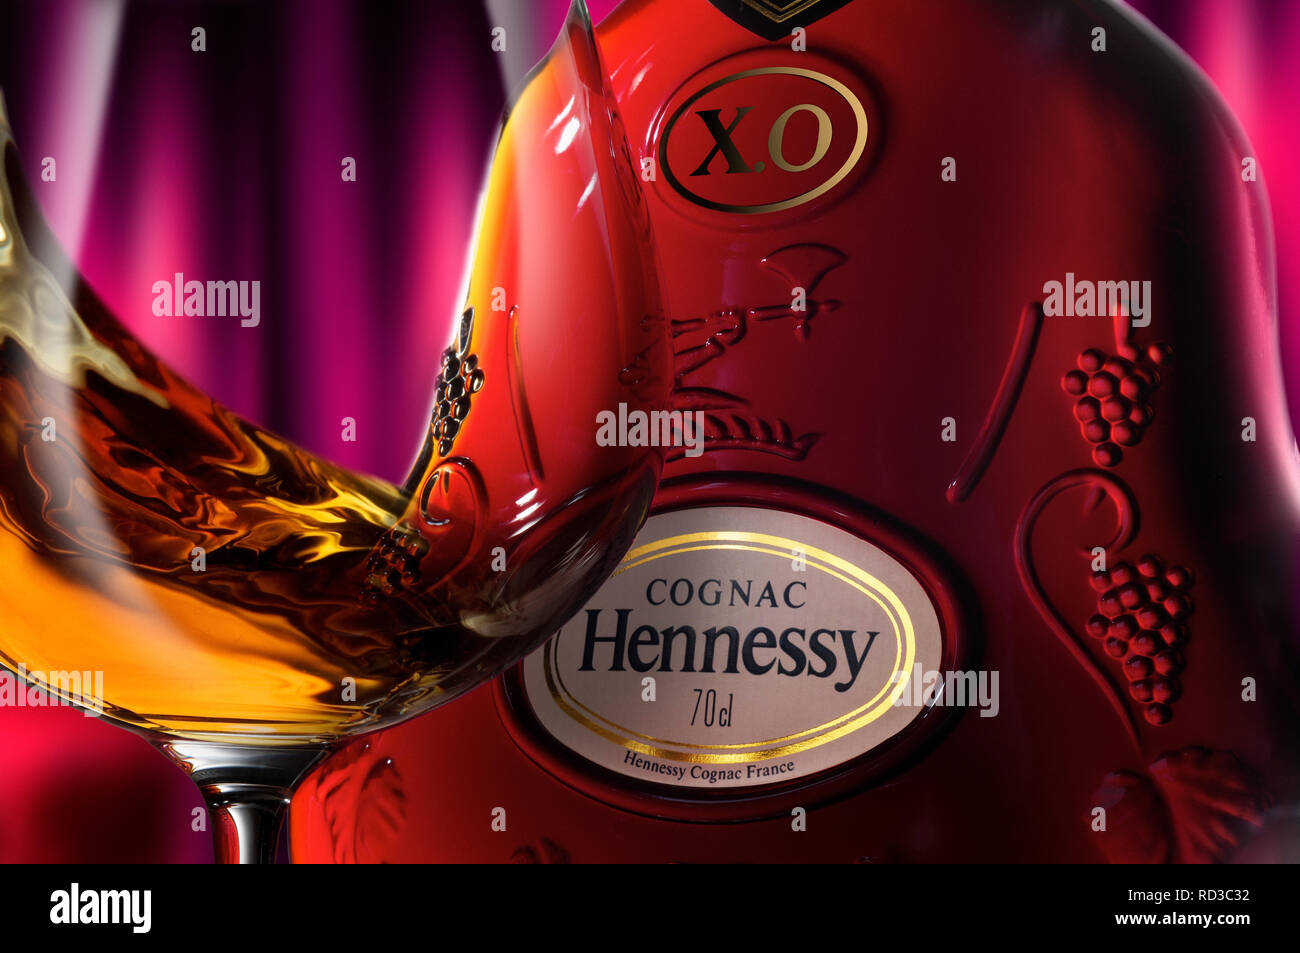 Close up image of cognac Hennessy bouteille et verre, studio shot Banque D'Images